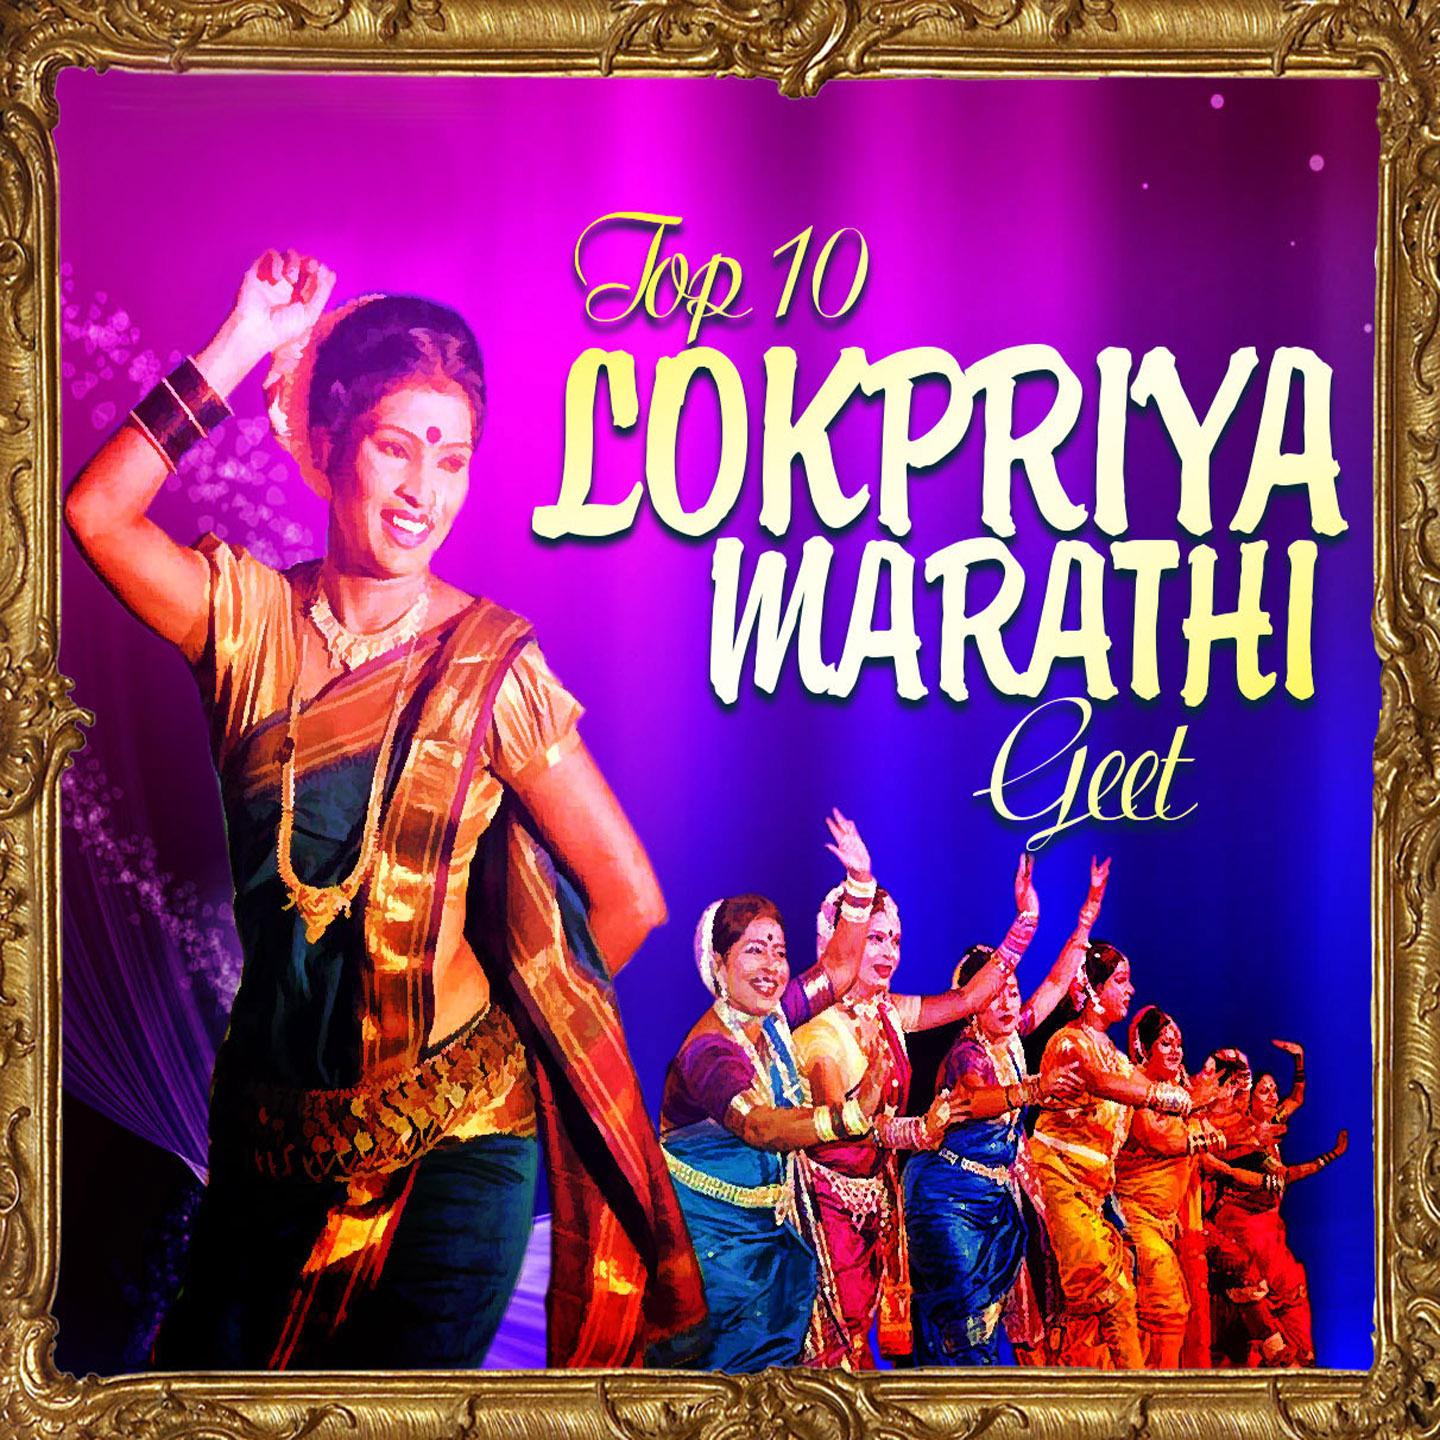 Top 10 Lokpriya Marathi Geet